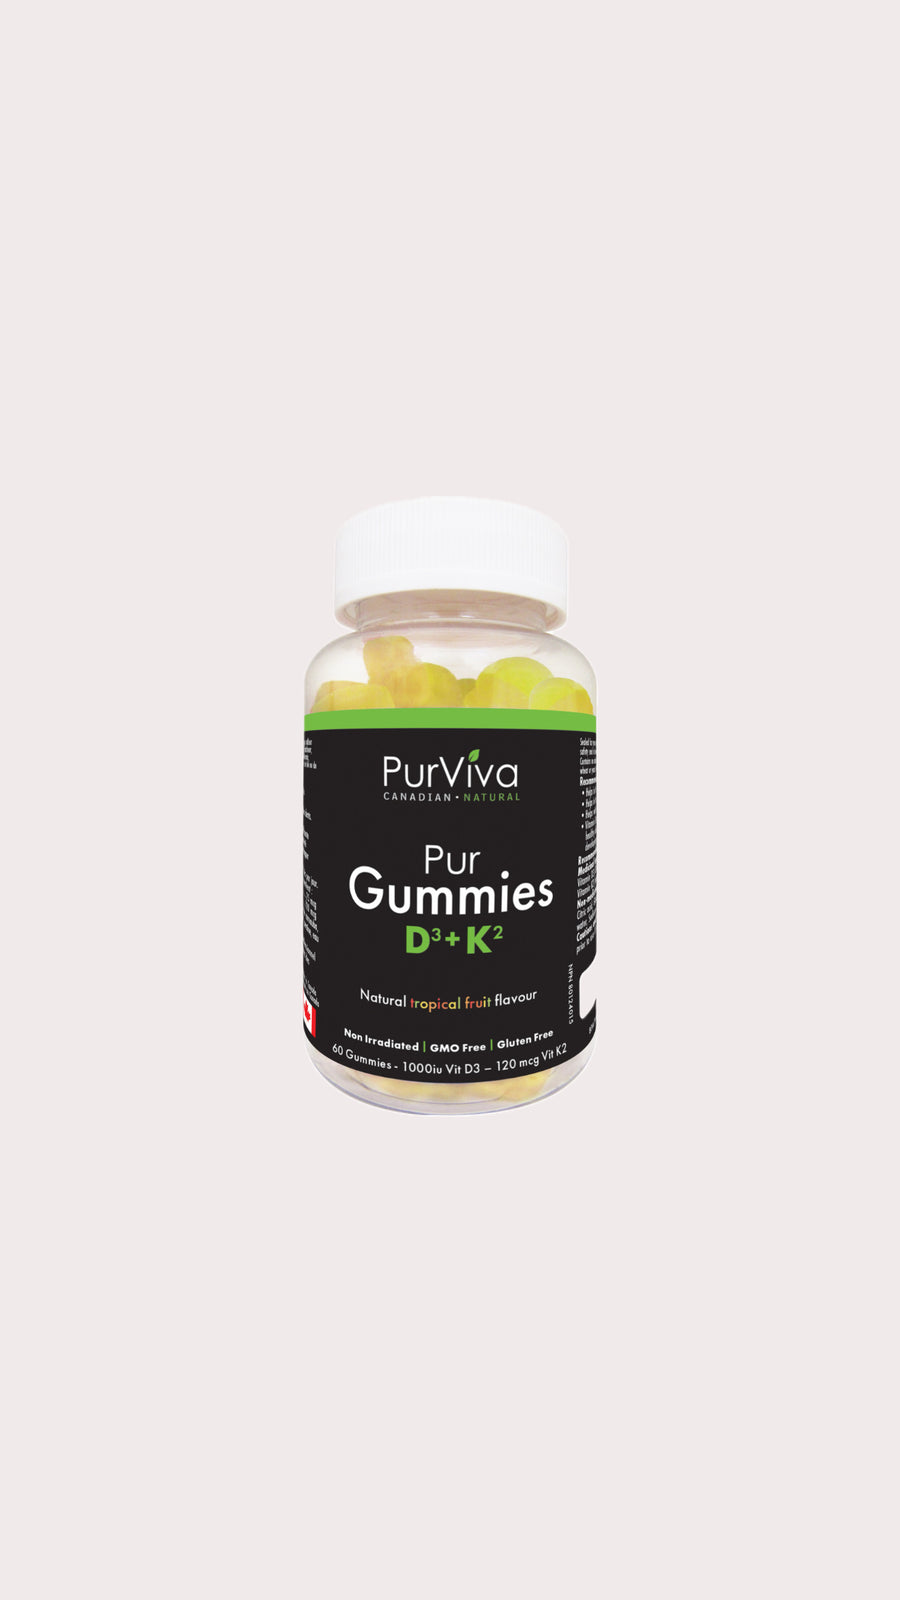 PurGummies D3+K2 (Natural tropical fruit flavour)